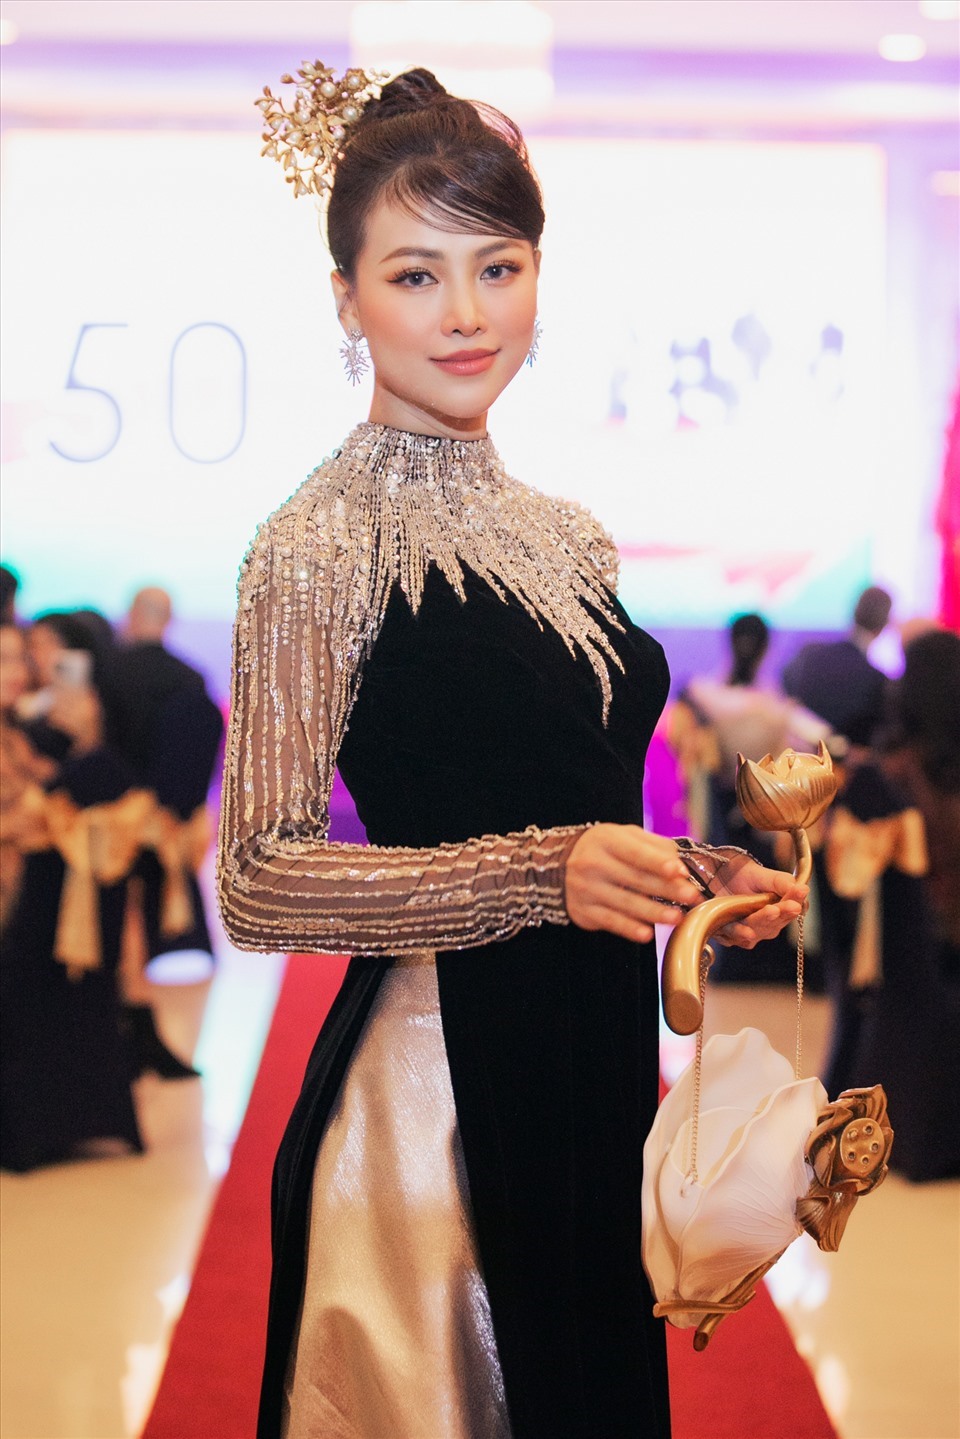 Với tinh thần quảng bá và tôn vinh các giá trị văn hóa truyền thống của áo dài Việt, NTK Hoàng Hải đã khắc họa hình ảnh của hoa sen, chim phượng,... Đặc biệt, với các phụ kiện đặc trưng như trâm cài, mấn đội đầu đặc trưng cho nét đẹp truyền thống cũng được anh ưu tiên chọn lựa.